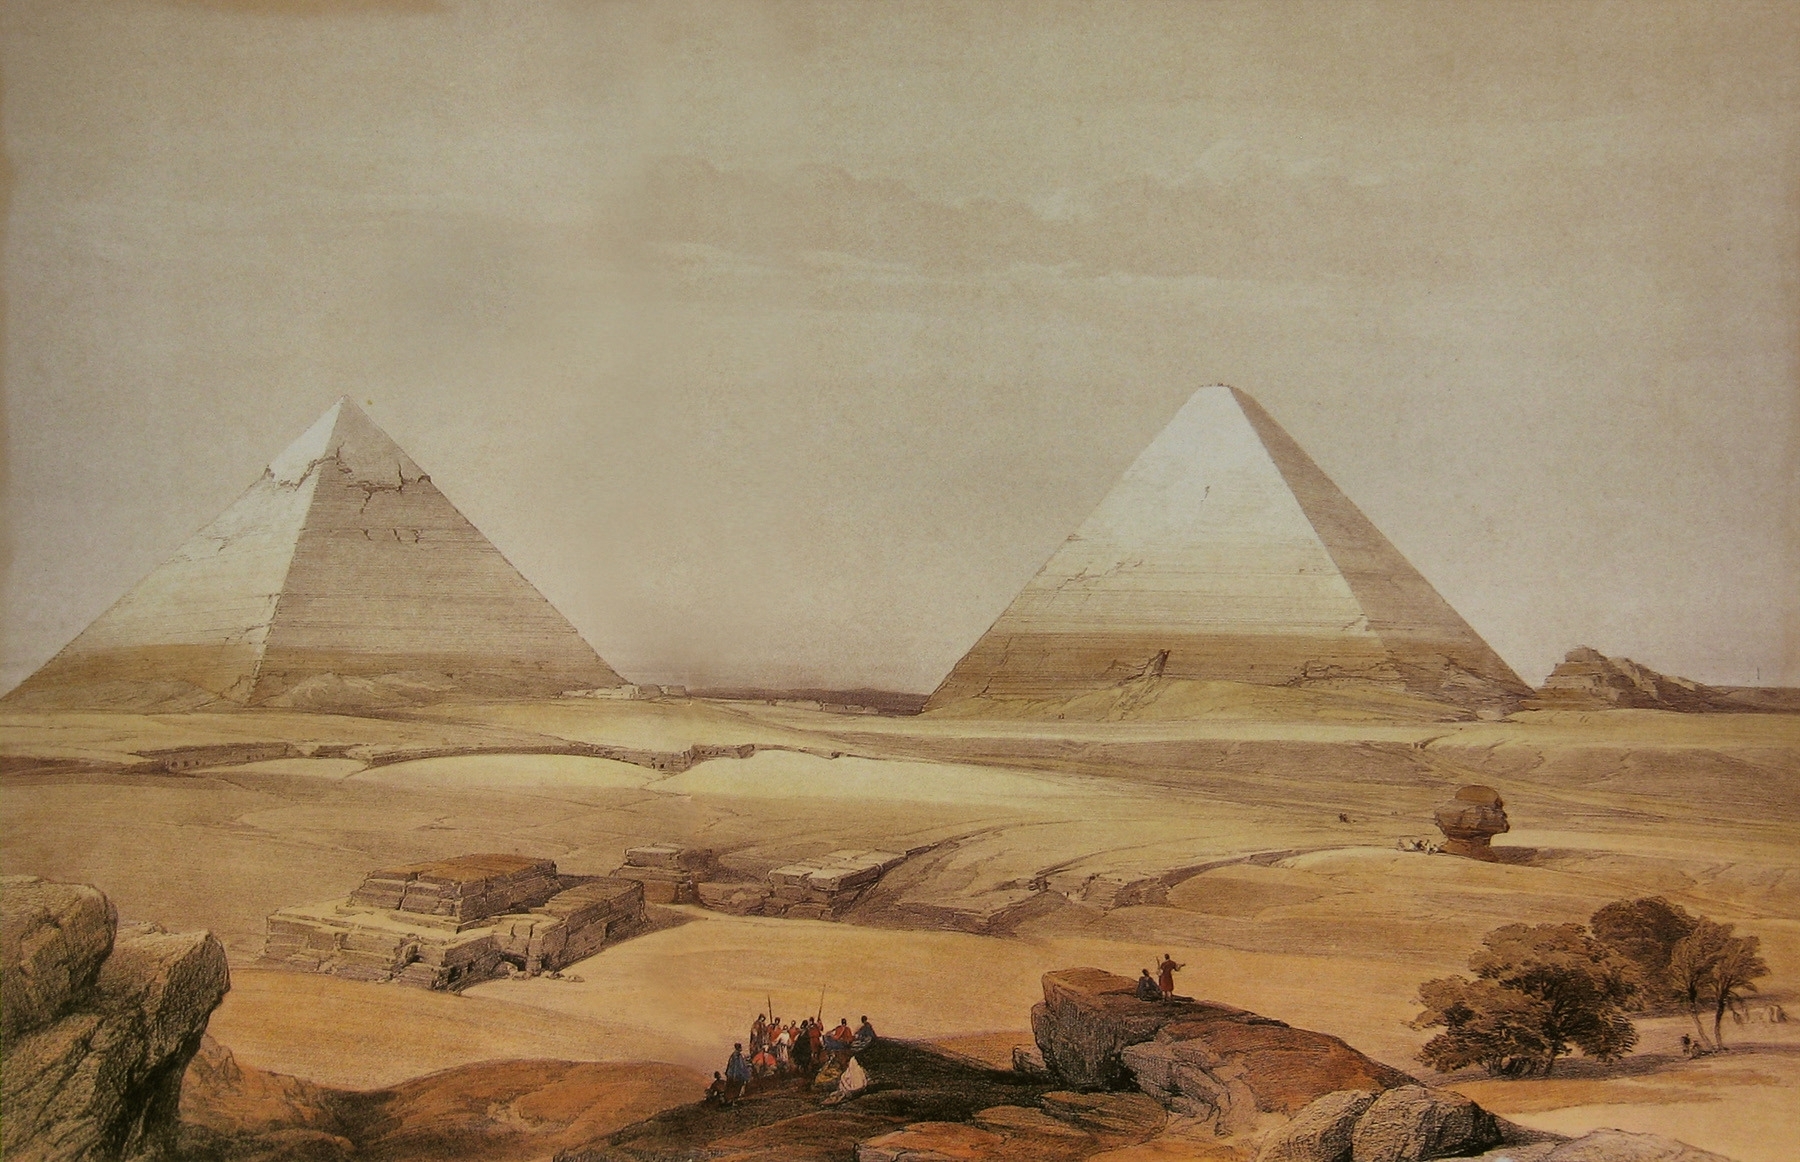 David Roberts, Egypt, Painting, Pyramid Wallpaper